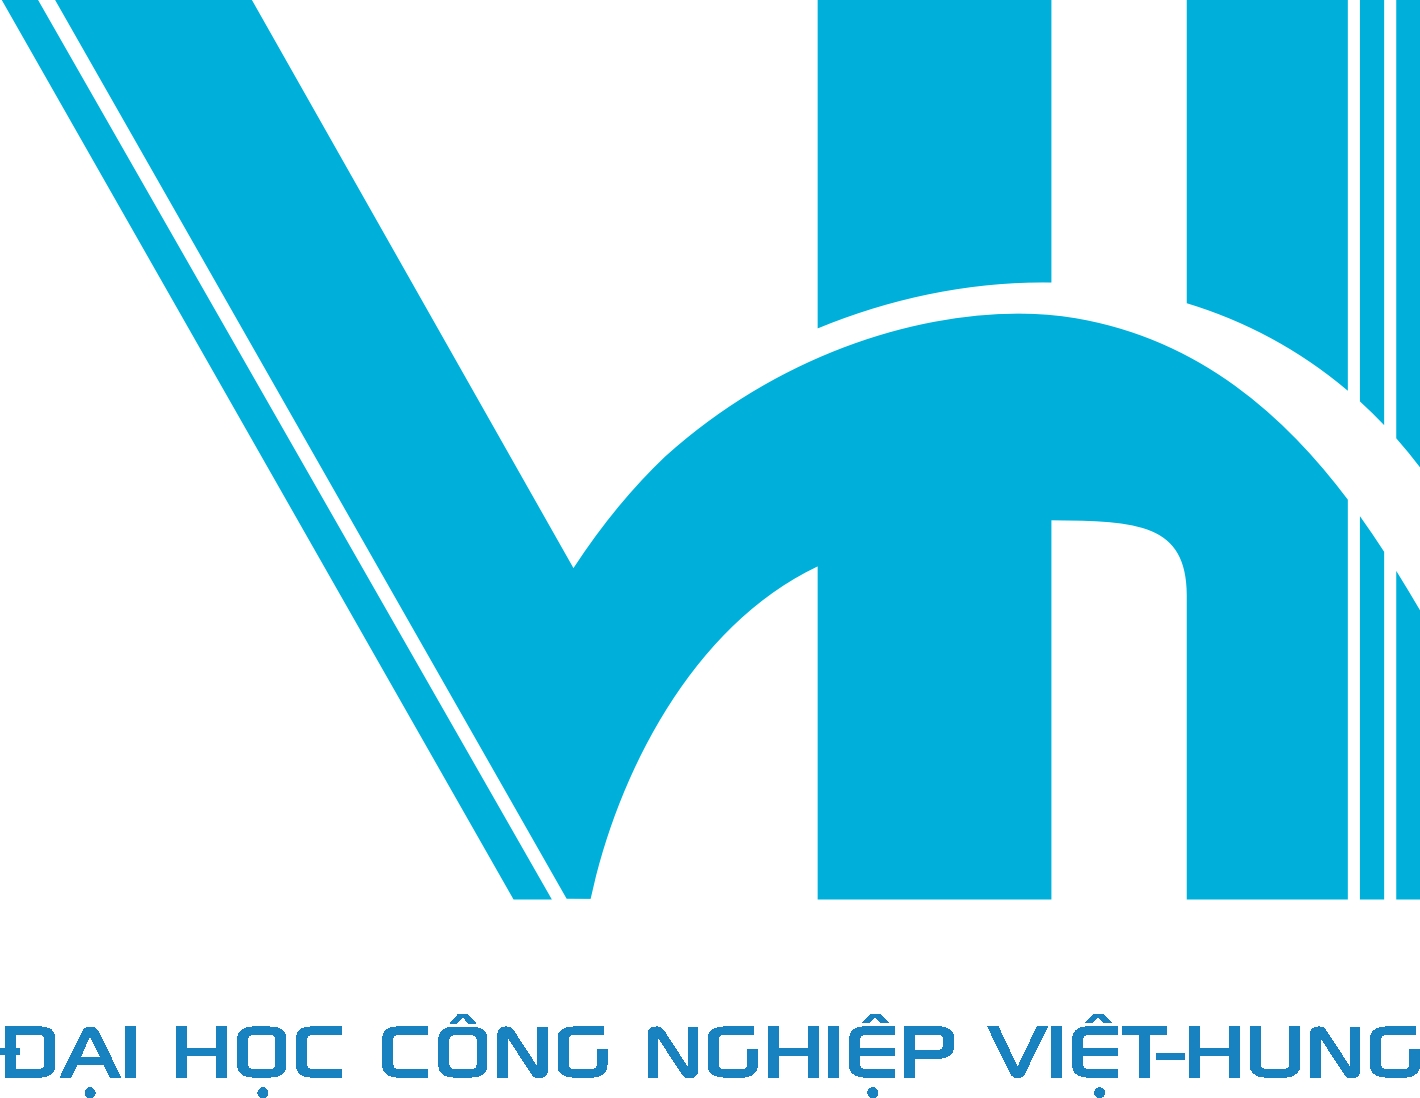 VHD - Đại học công nghiệp Việt - Hung